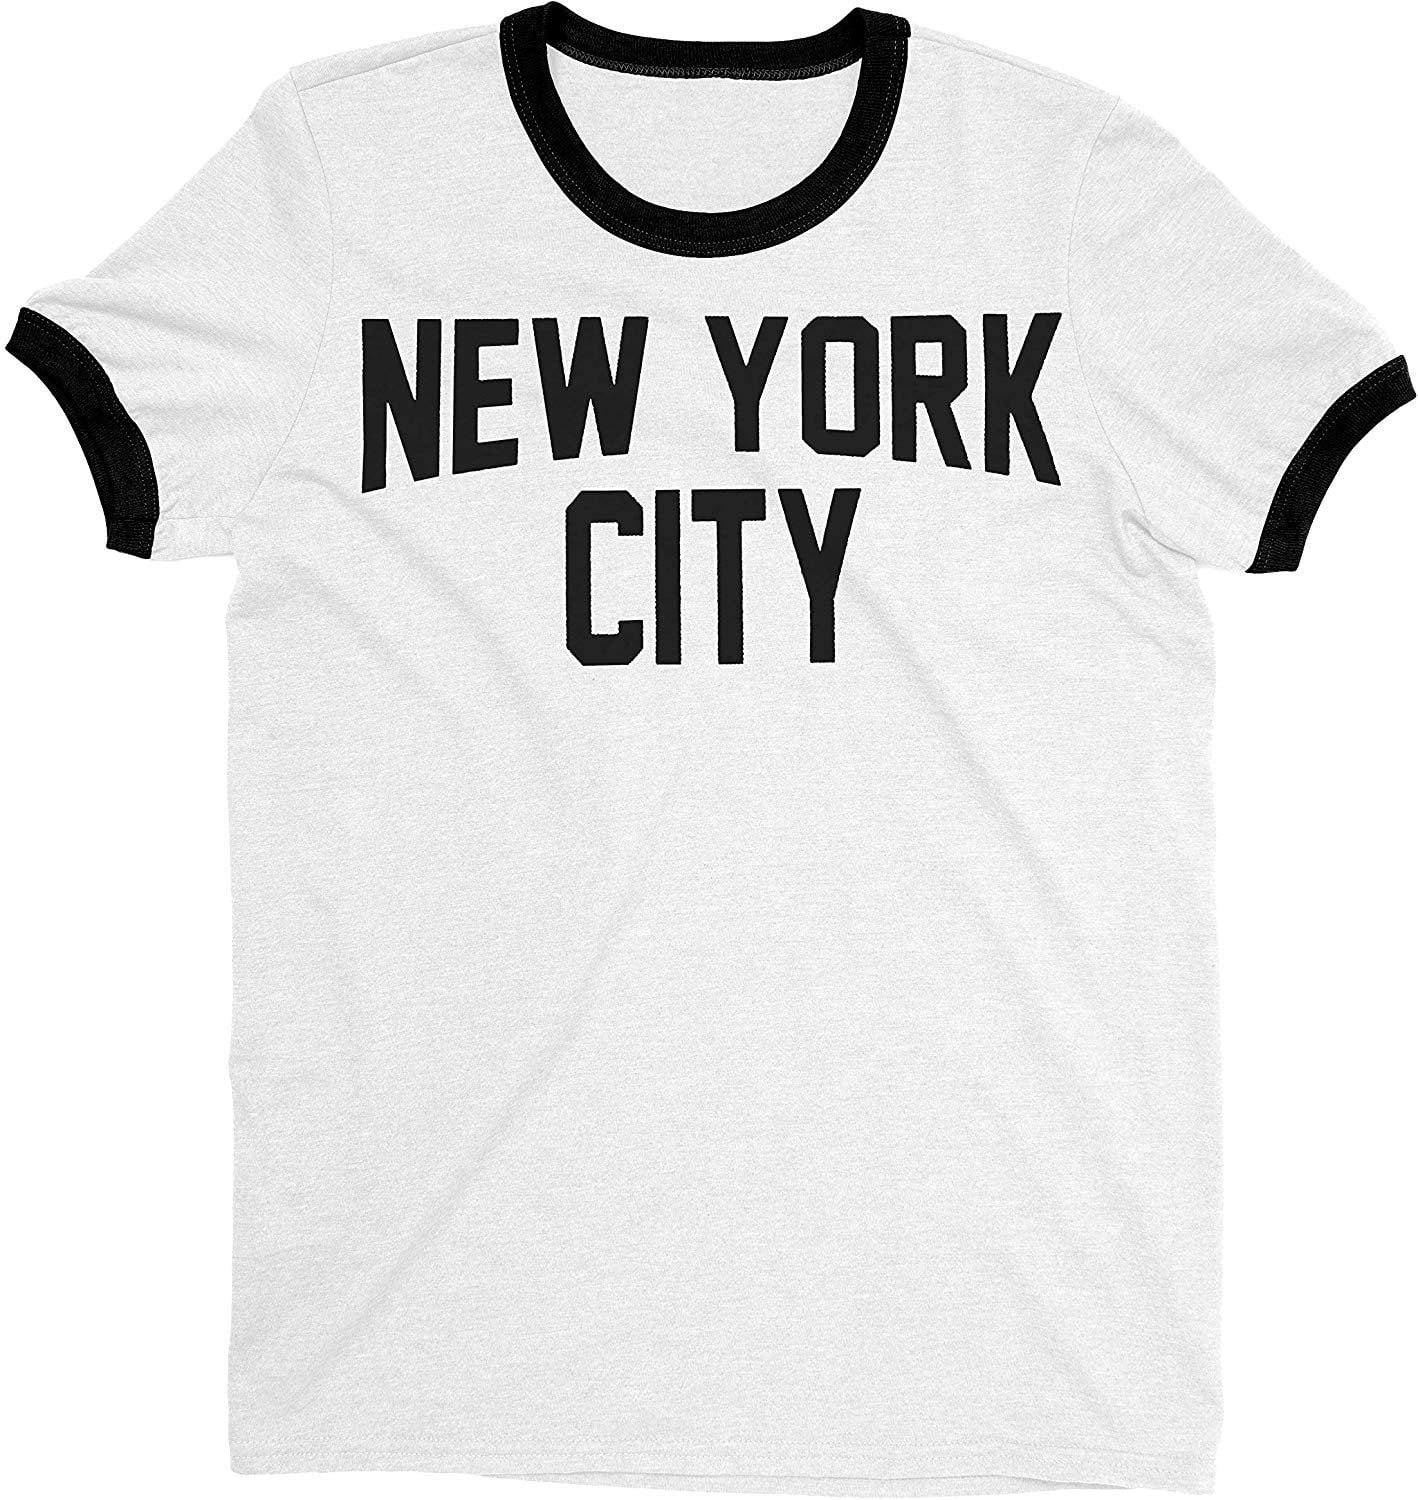 som resultat nabo titel New York City John Lennon Ringer T-shirt White/Black, S - Walmart.com